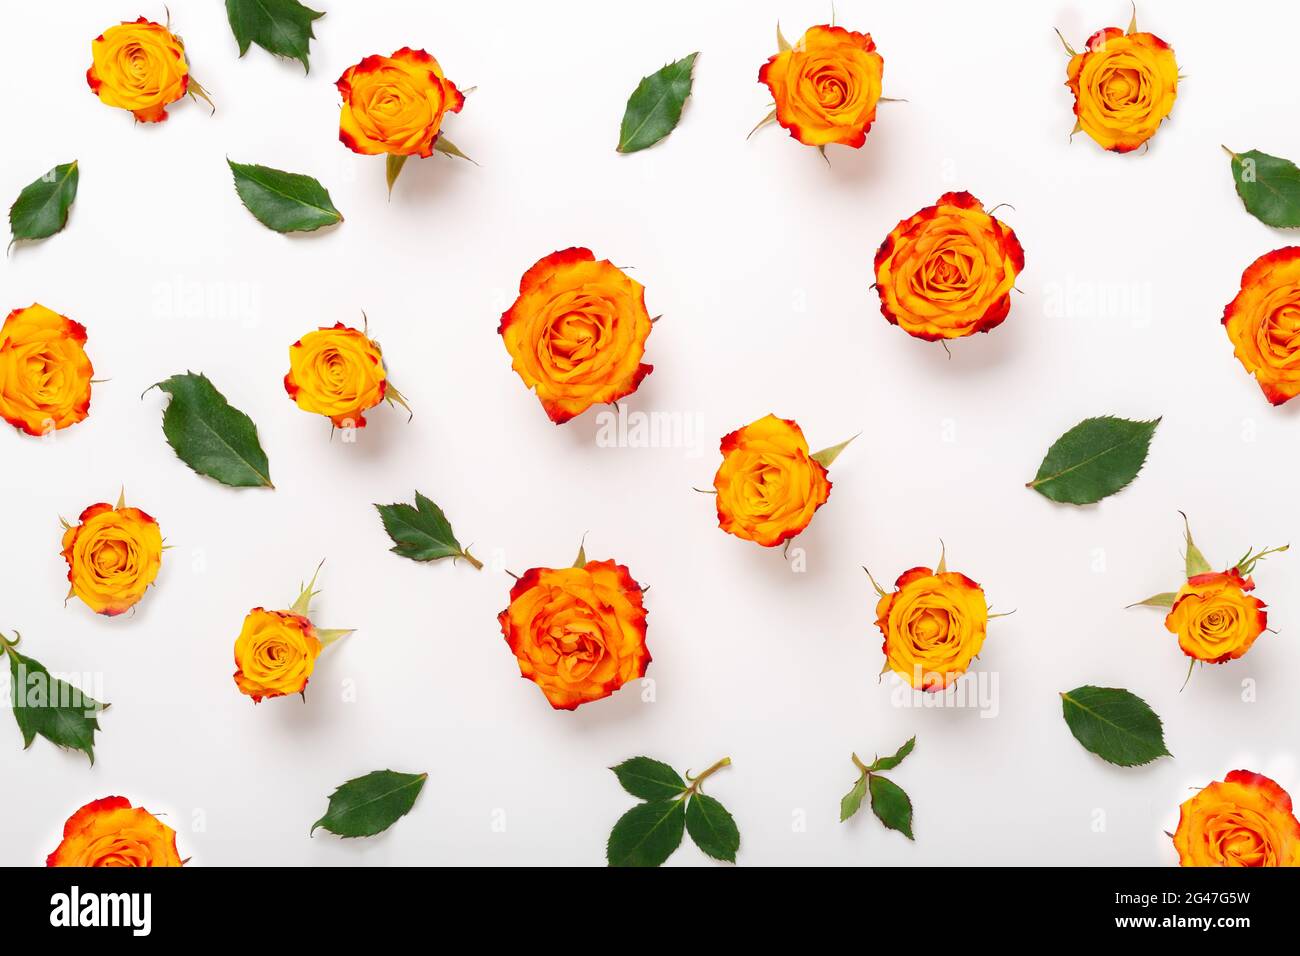 Motif composé de fleurs roses et de feuilles vertes sur fond blanc. Fête des mères, concept de fête des femmes. Flat Lay, vue de dessus - image Banque D'Images